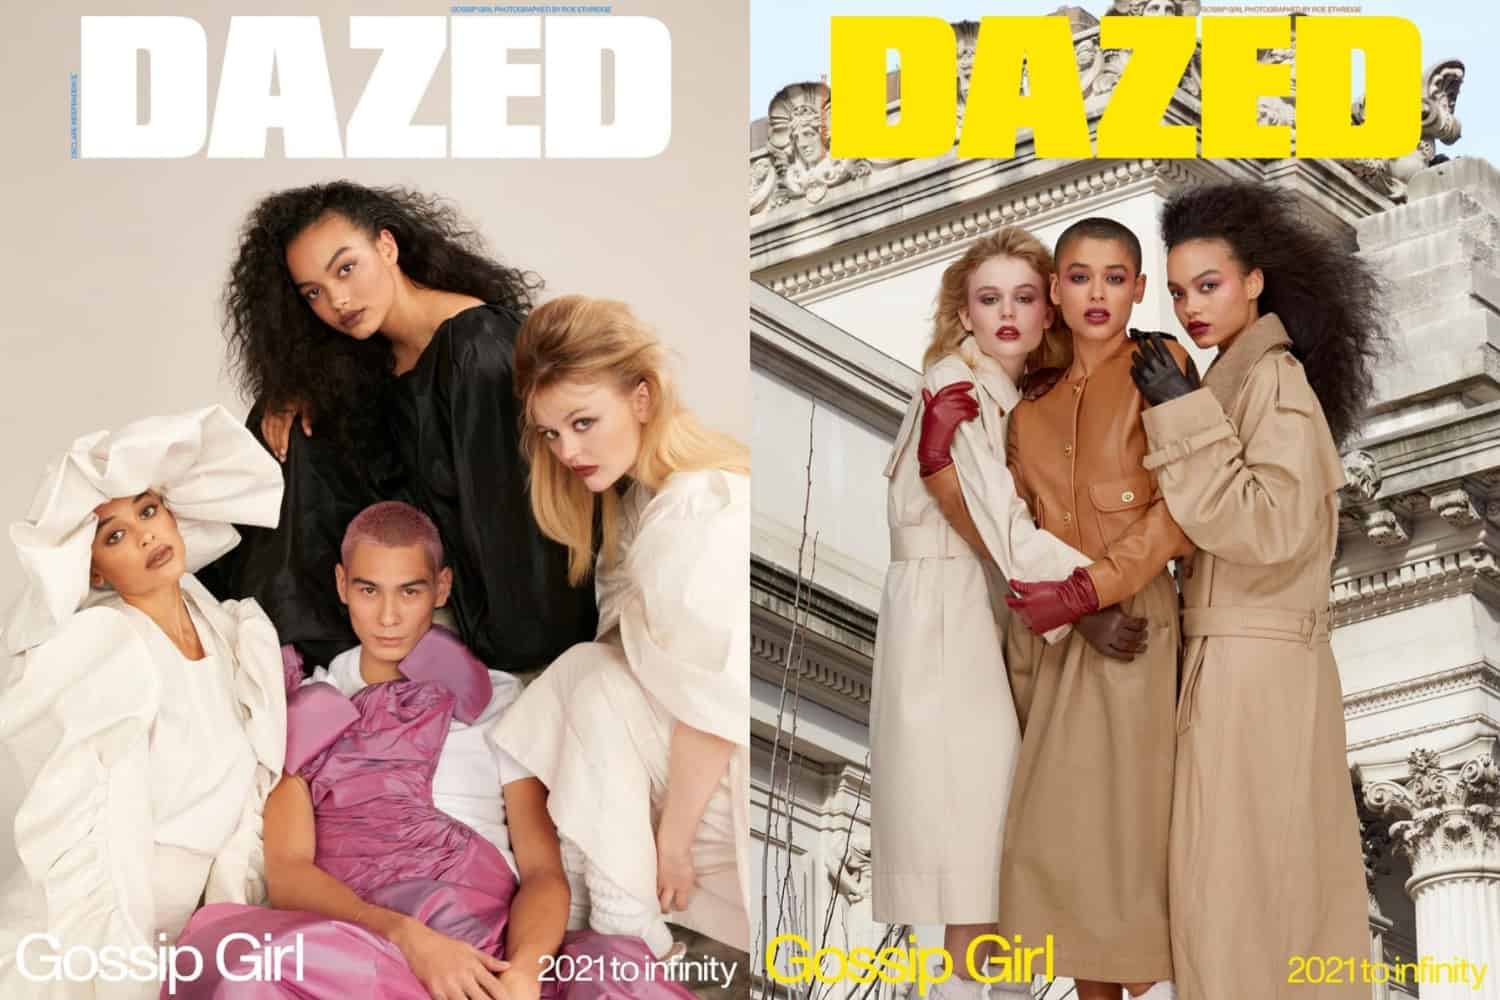 OMG-G! Gossip Girl's New Cast Covers Dazed's Spring 2021 Issue